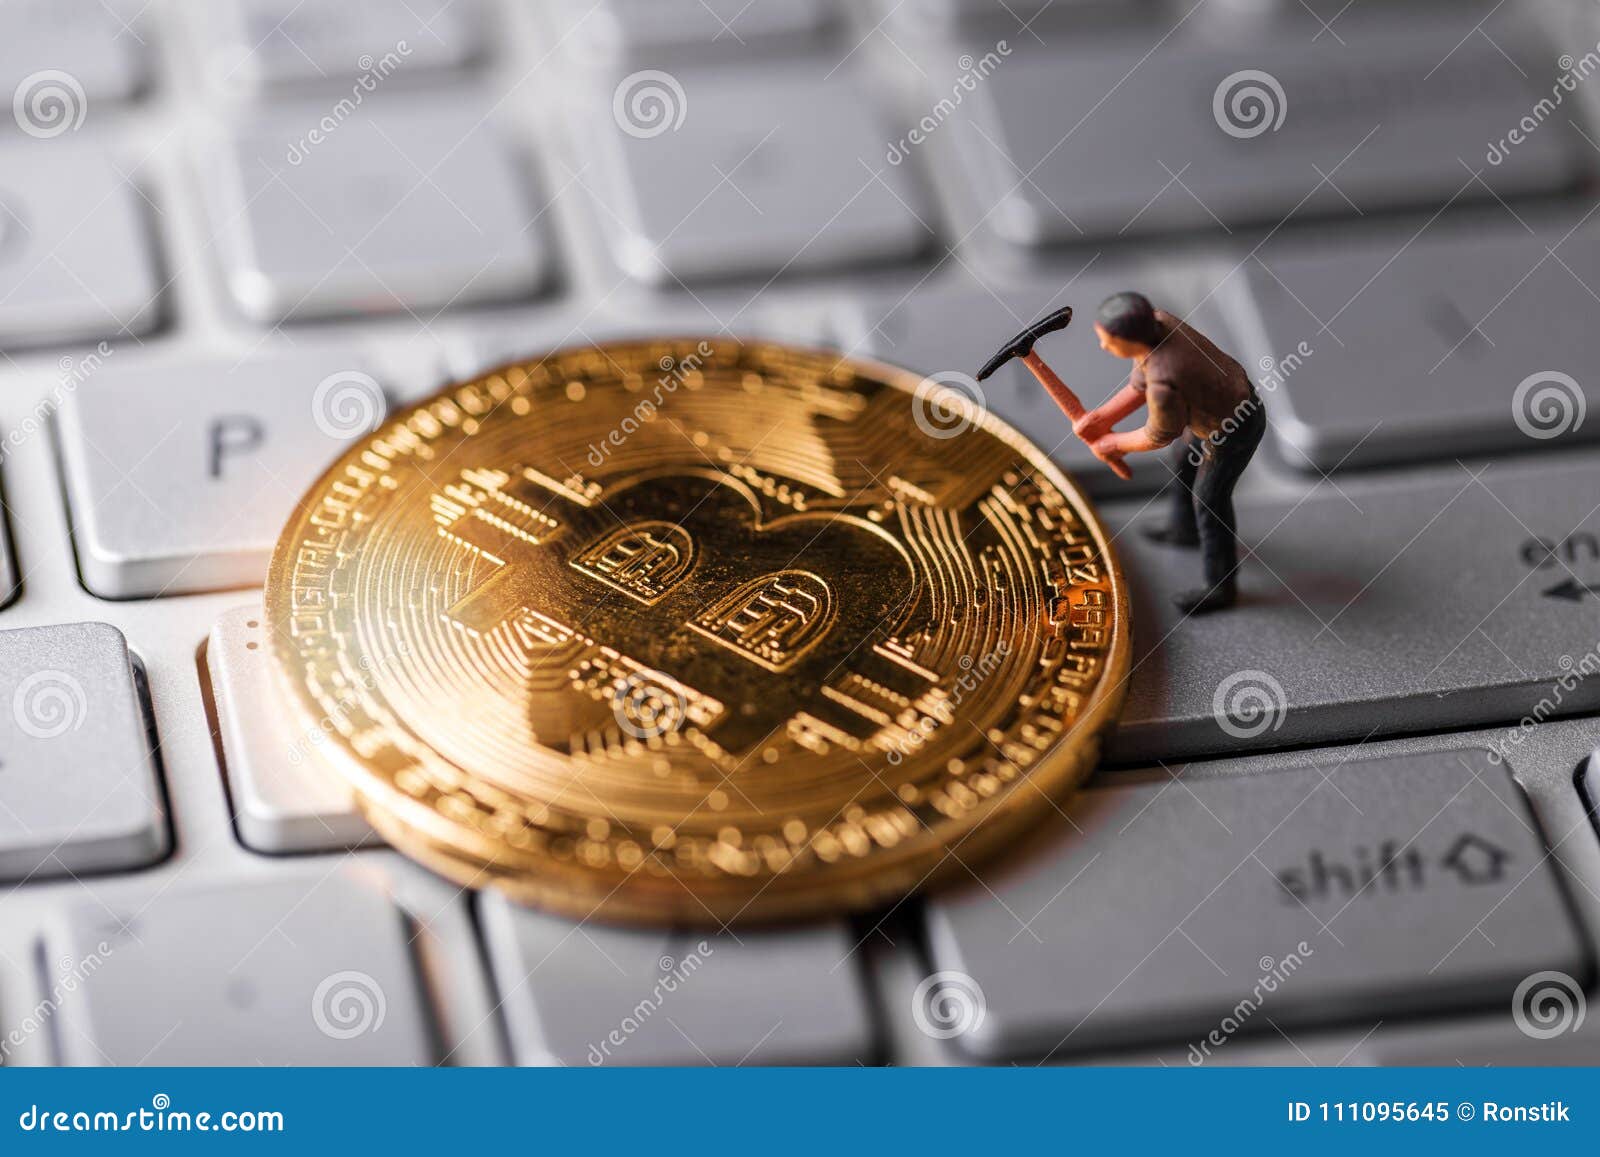 Earn Money Mining Bitcoins | How To Earn Bitcoin On Coinbase